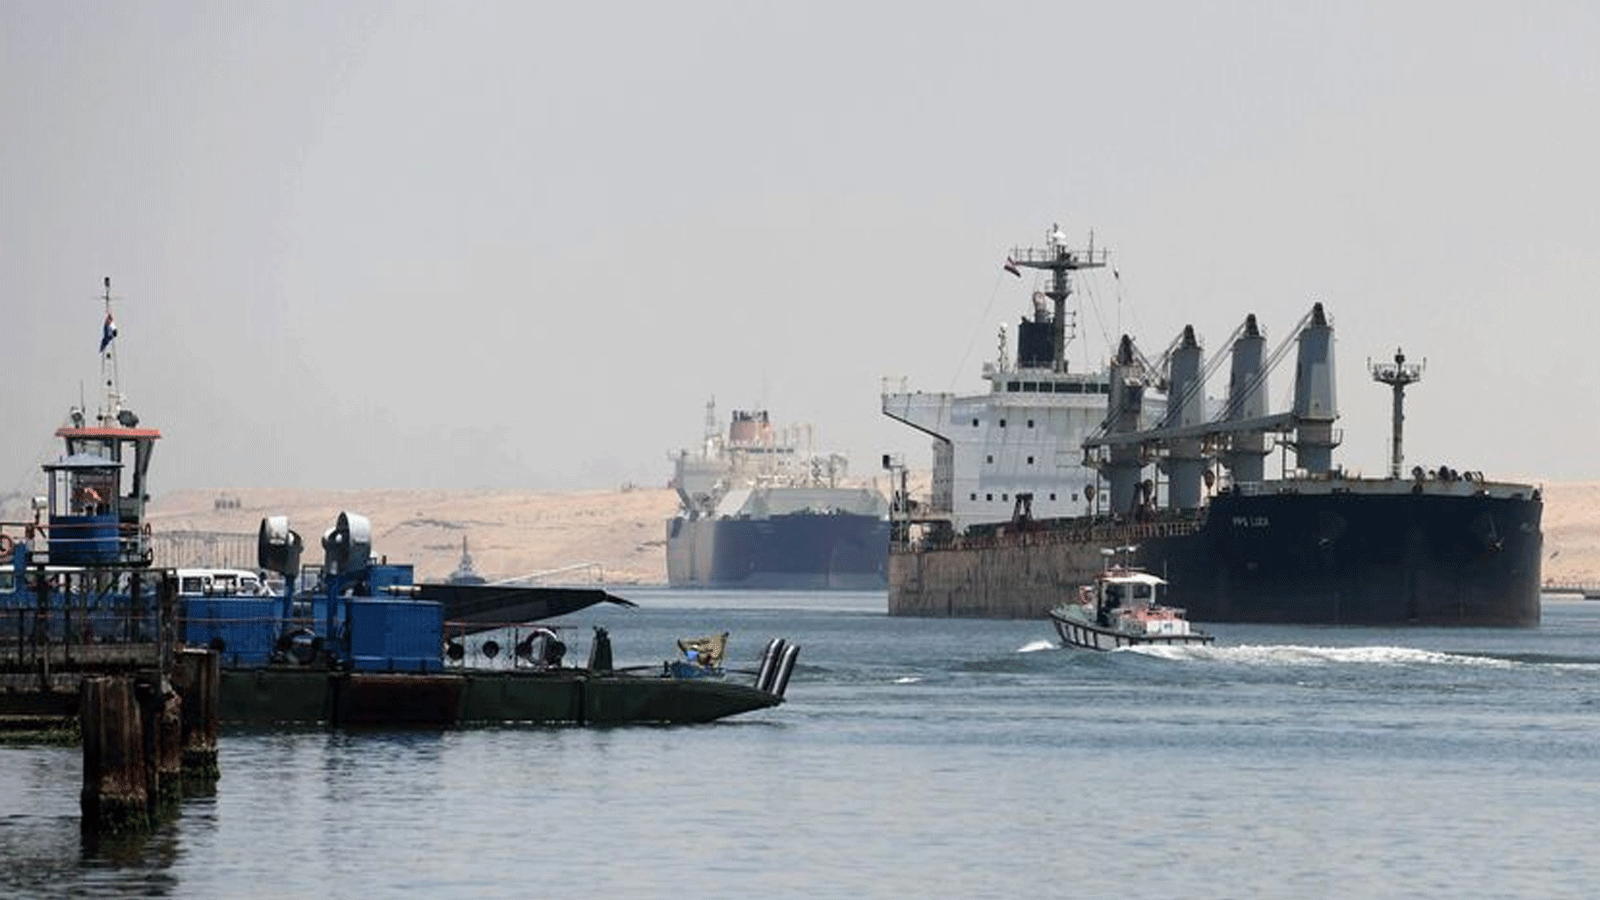 لقطة لسفن تبحر عبر قناة السويس في مدينة الإسماعيلية شمال شرق مصر. في 27 أيار\ مايو 2021.